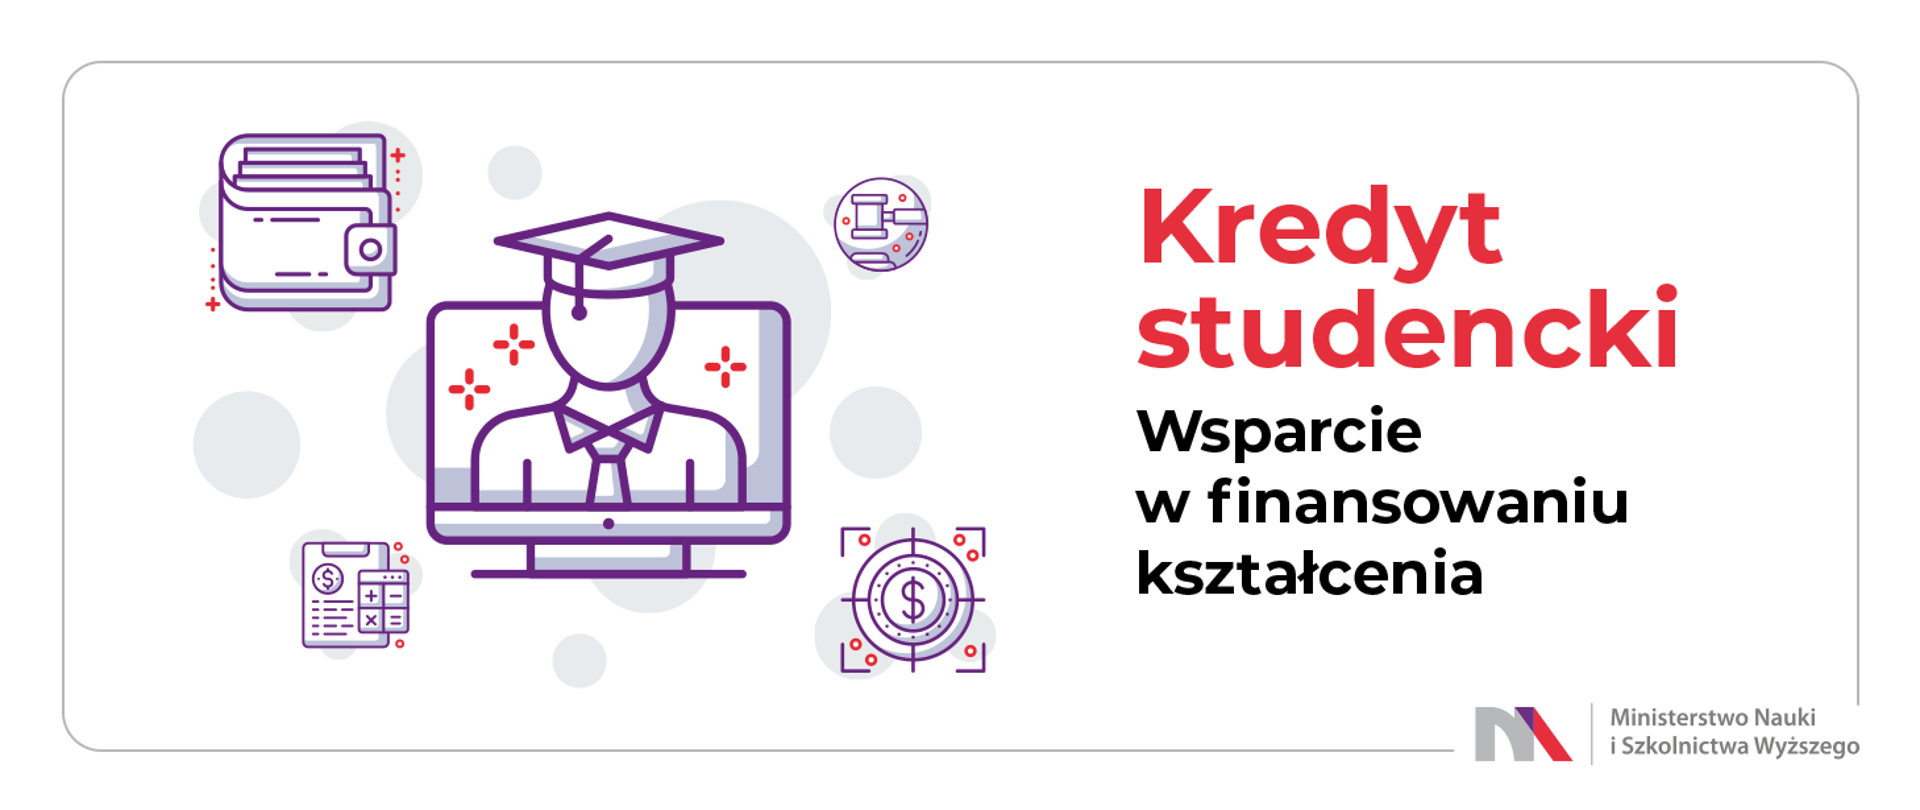 Grafika z napisem Kredyt studencki - wsparcie w finansowaniu kształcenia.